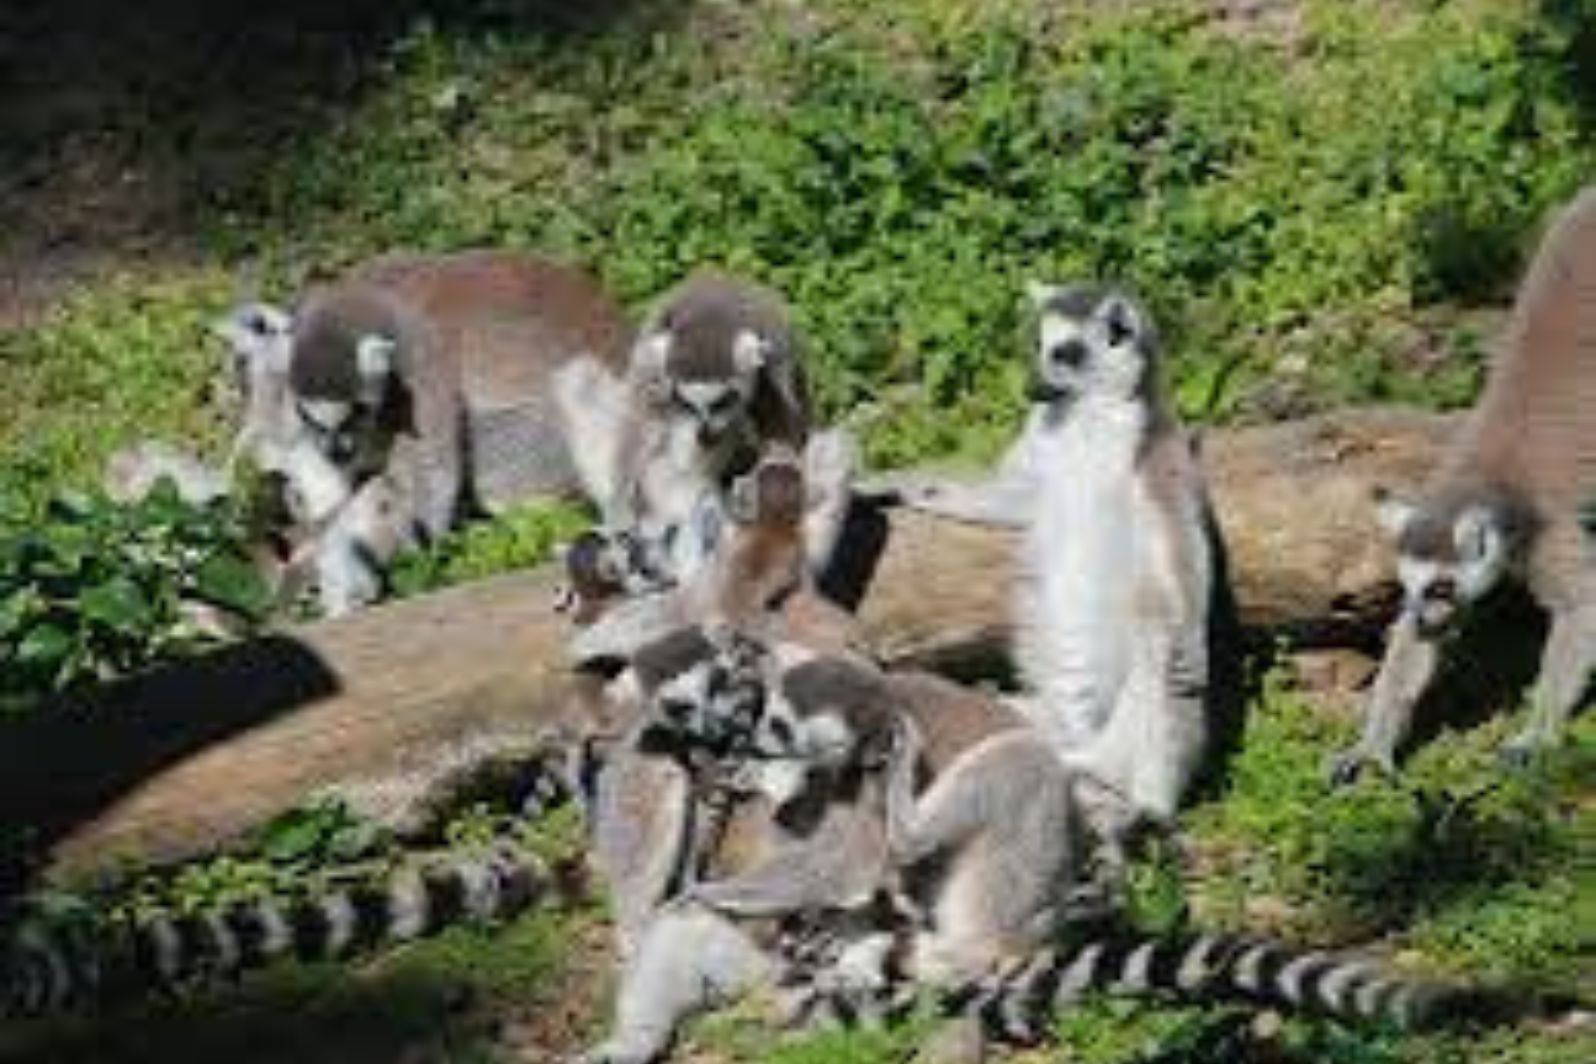 boleto de experiencia detrás del escenario del zoológico de adelaida lemur feeding